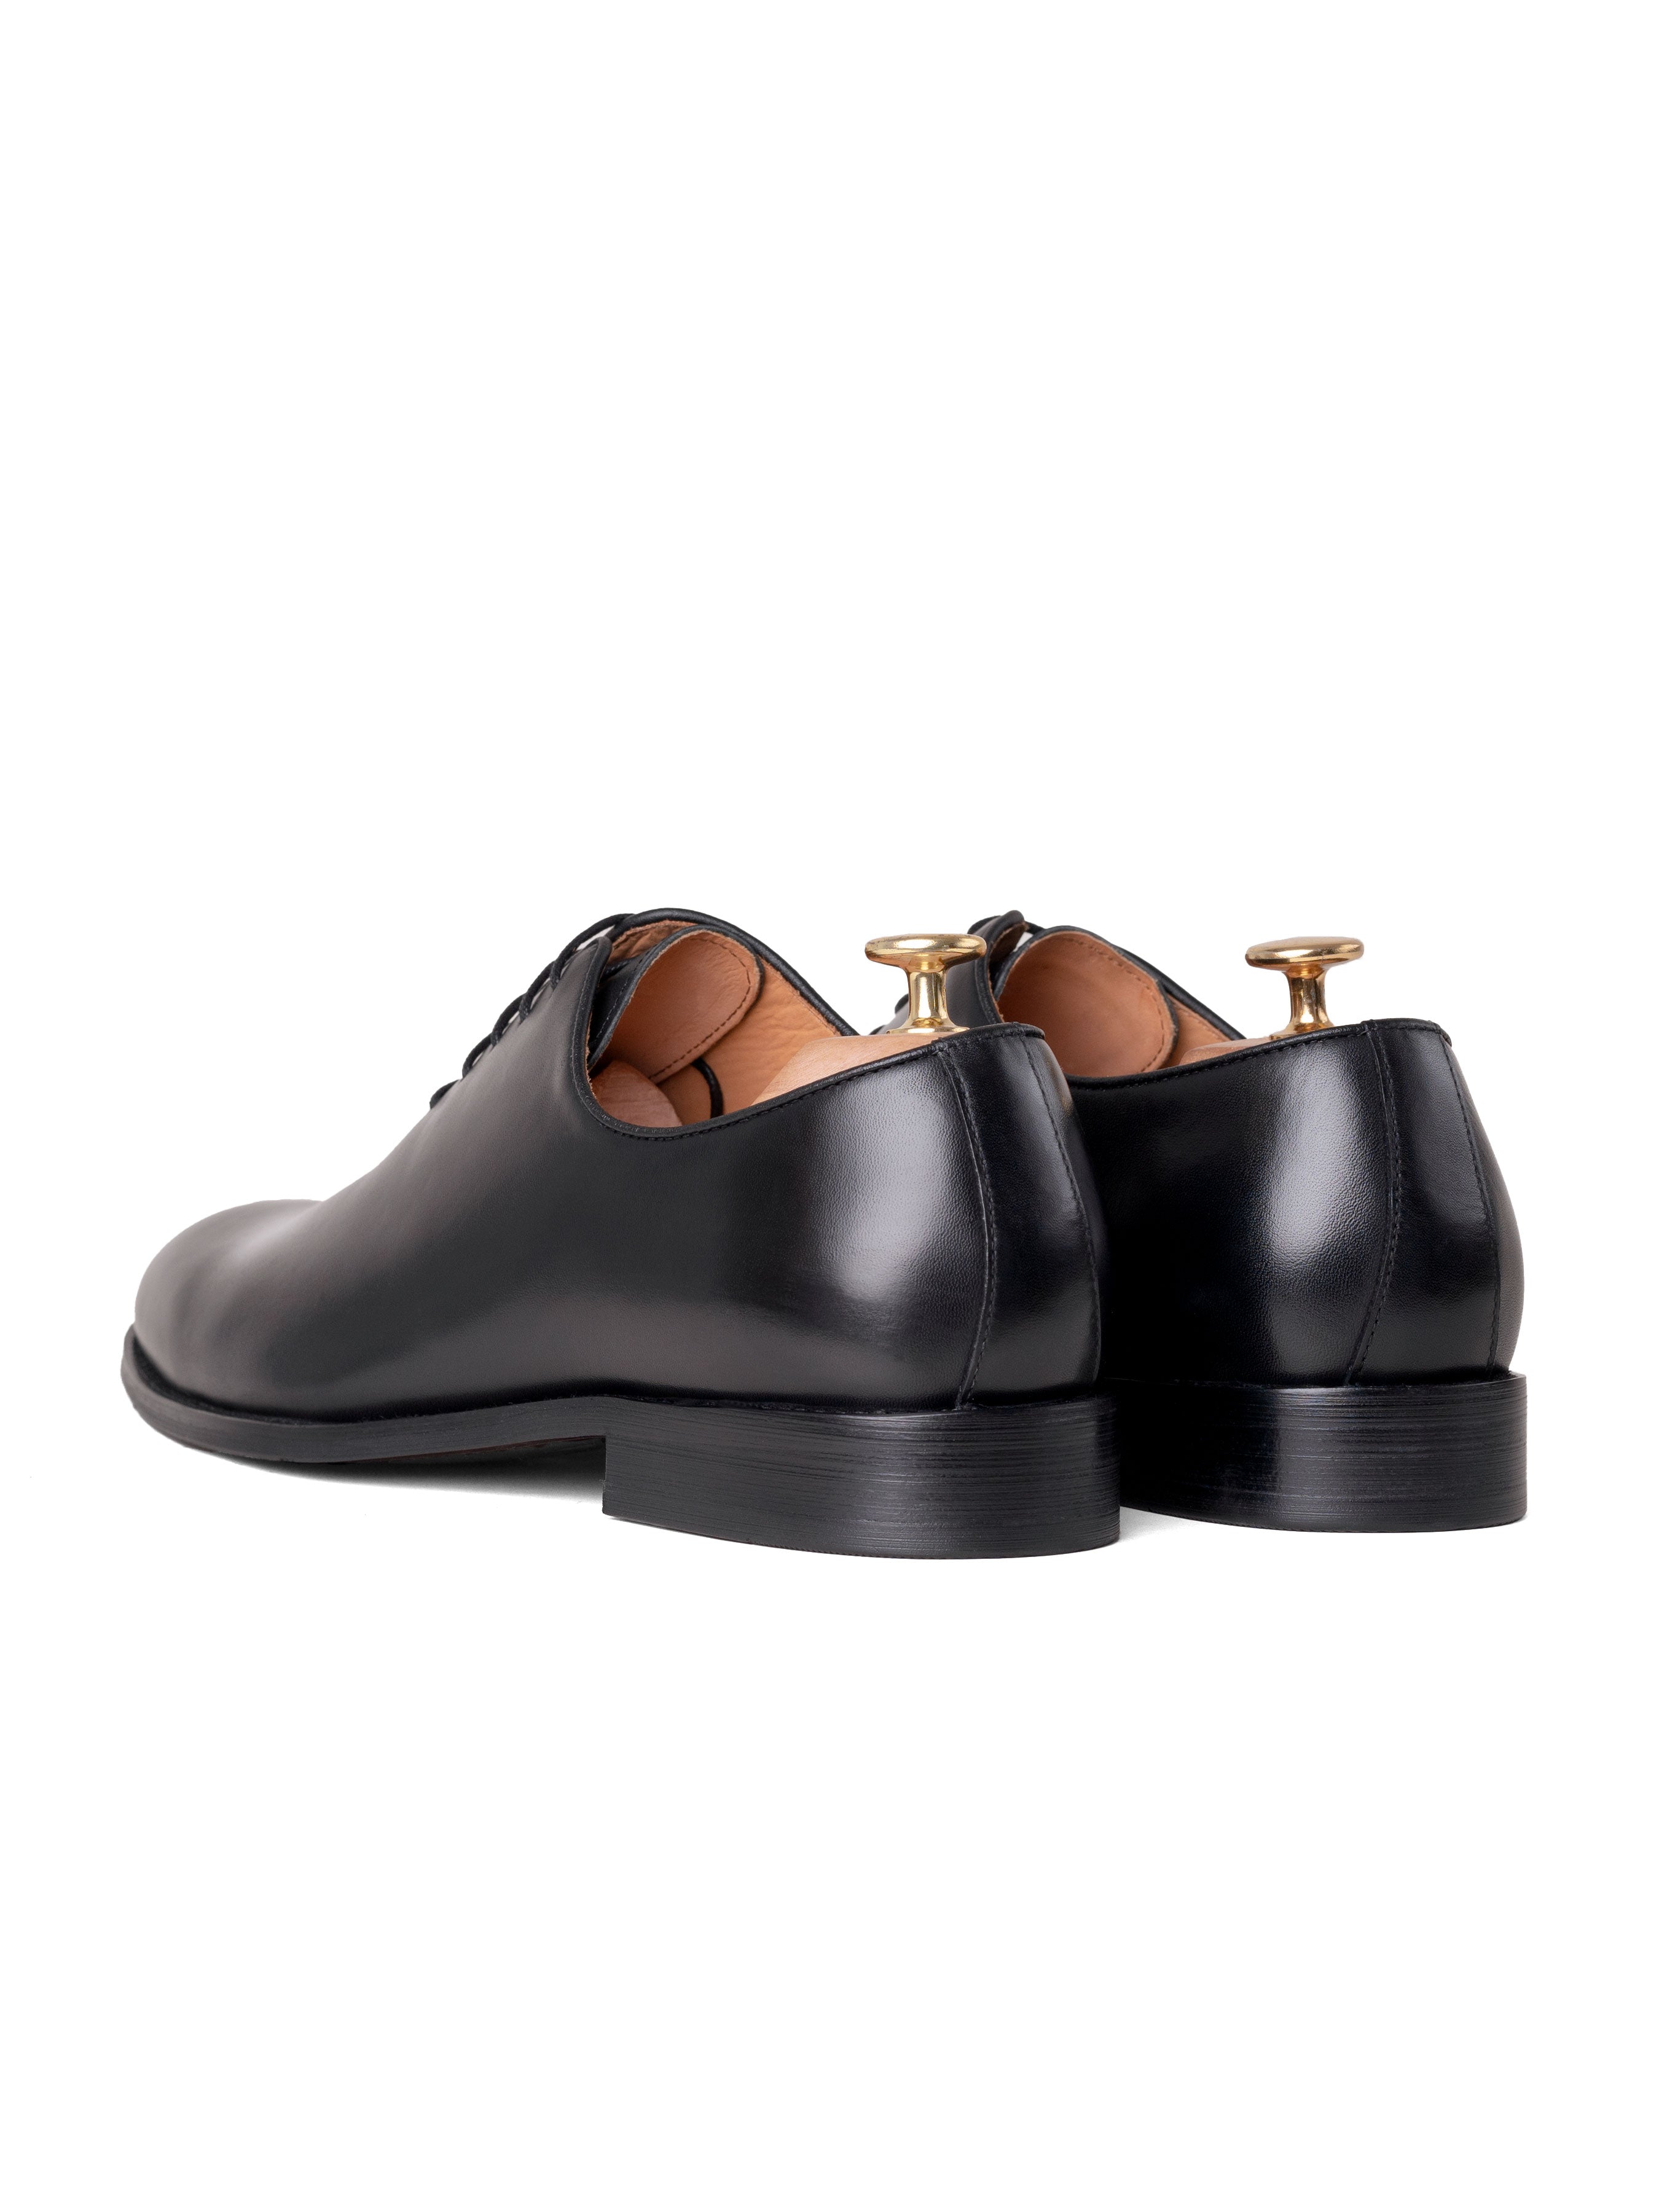 Wholecut Oxford  - Black Lace up - Zeve Shoes